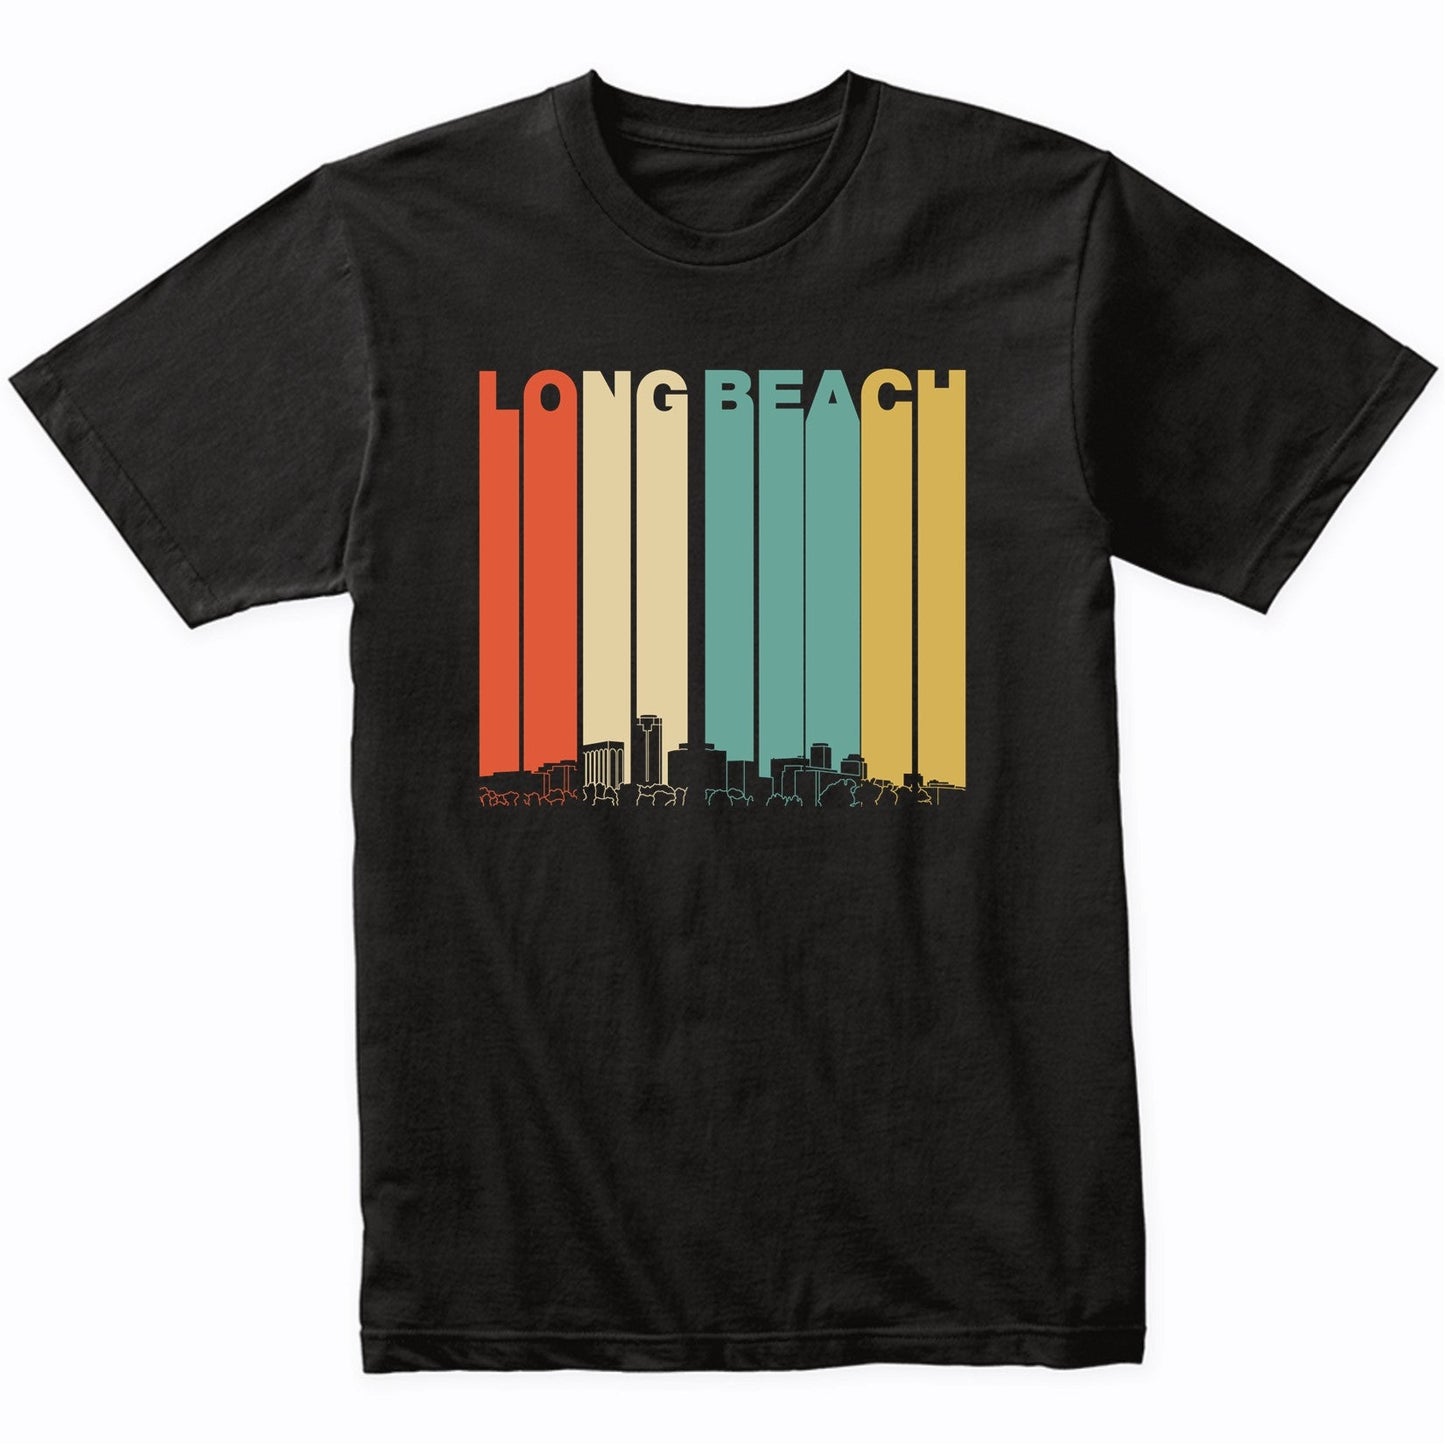 Vintage 1970's Style Long Beach California Skyline T-Shirt